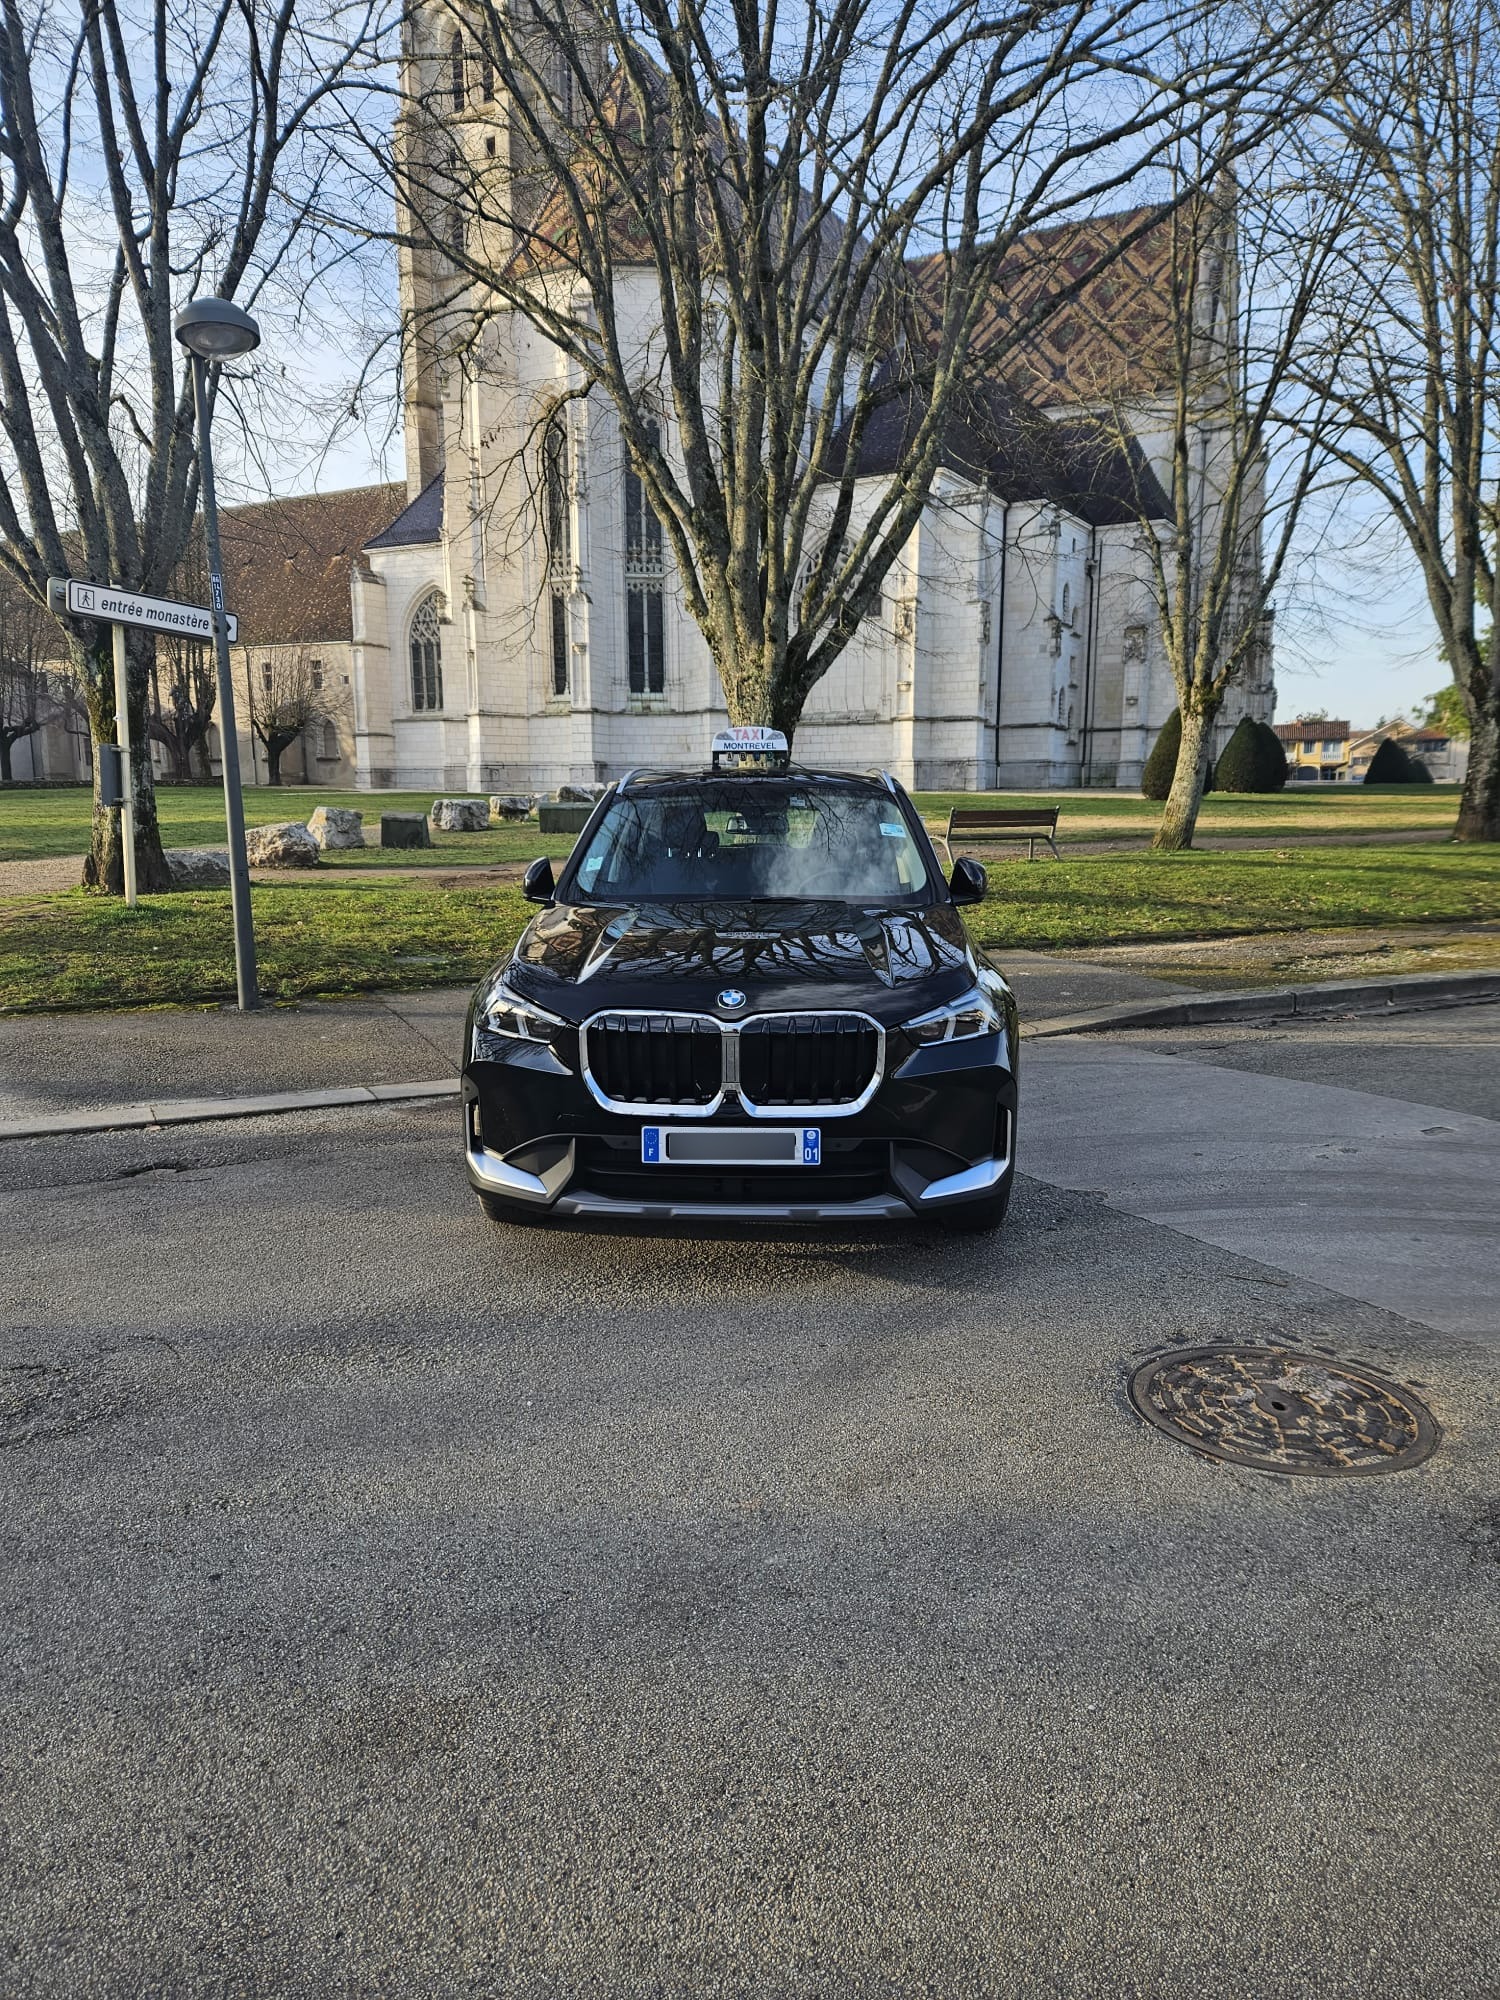 Taxi Christine devant le Monastère de Bourg-en-Bresse